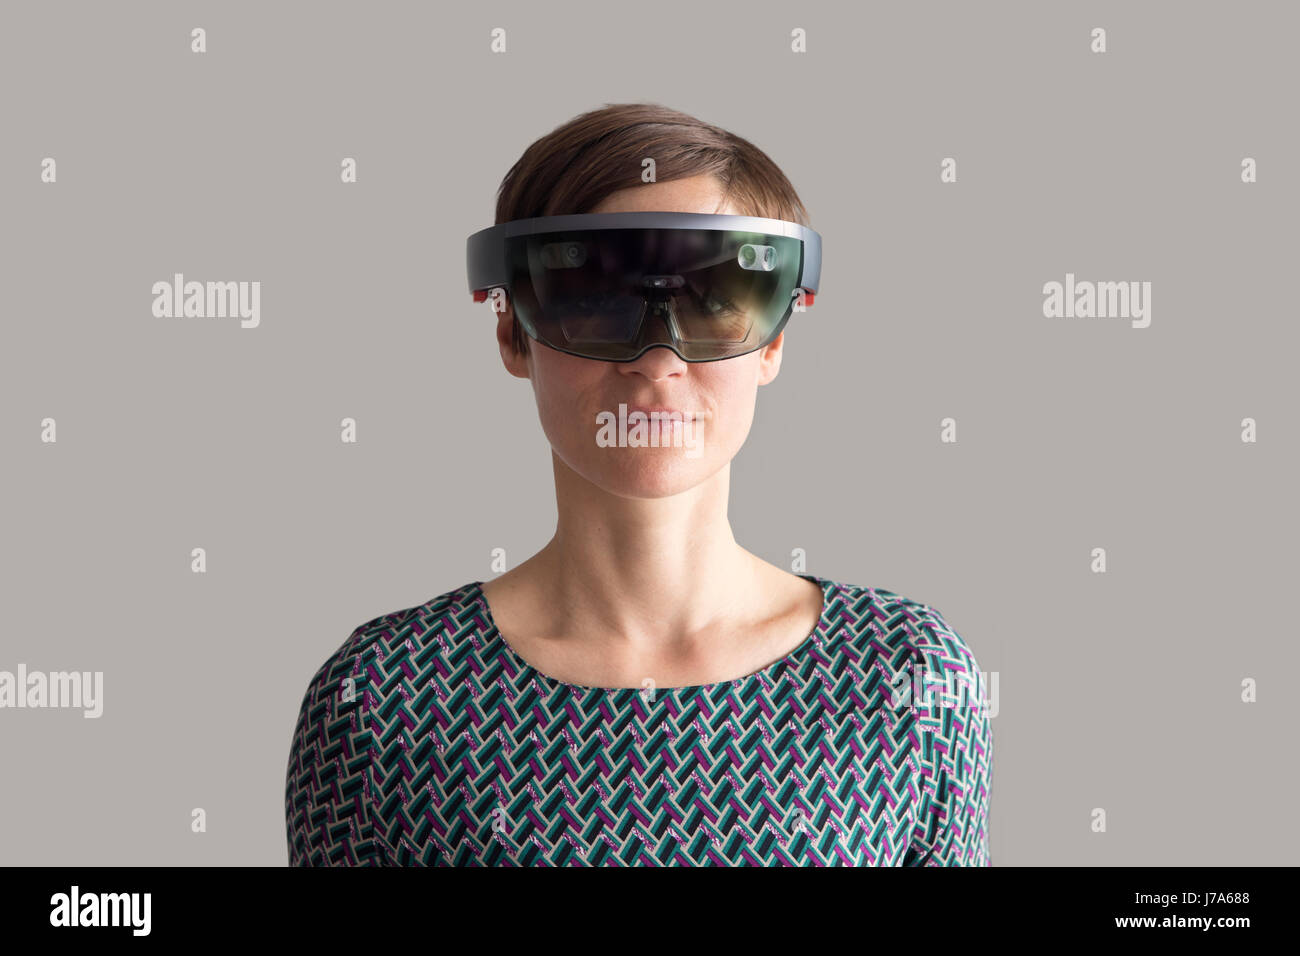 Woman wearing mixed reality smartglasses Stock Photo